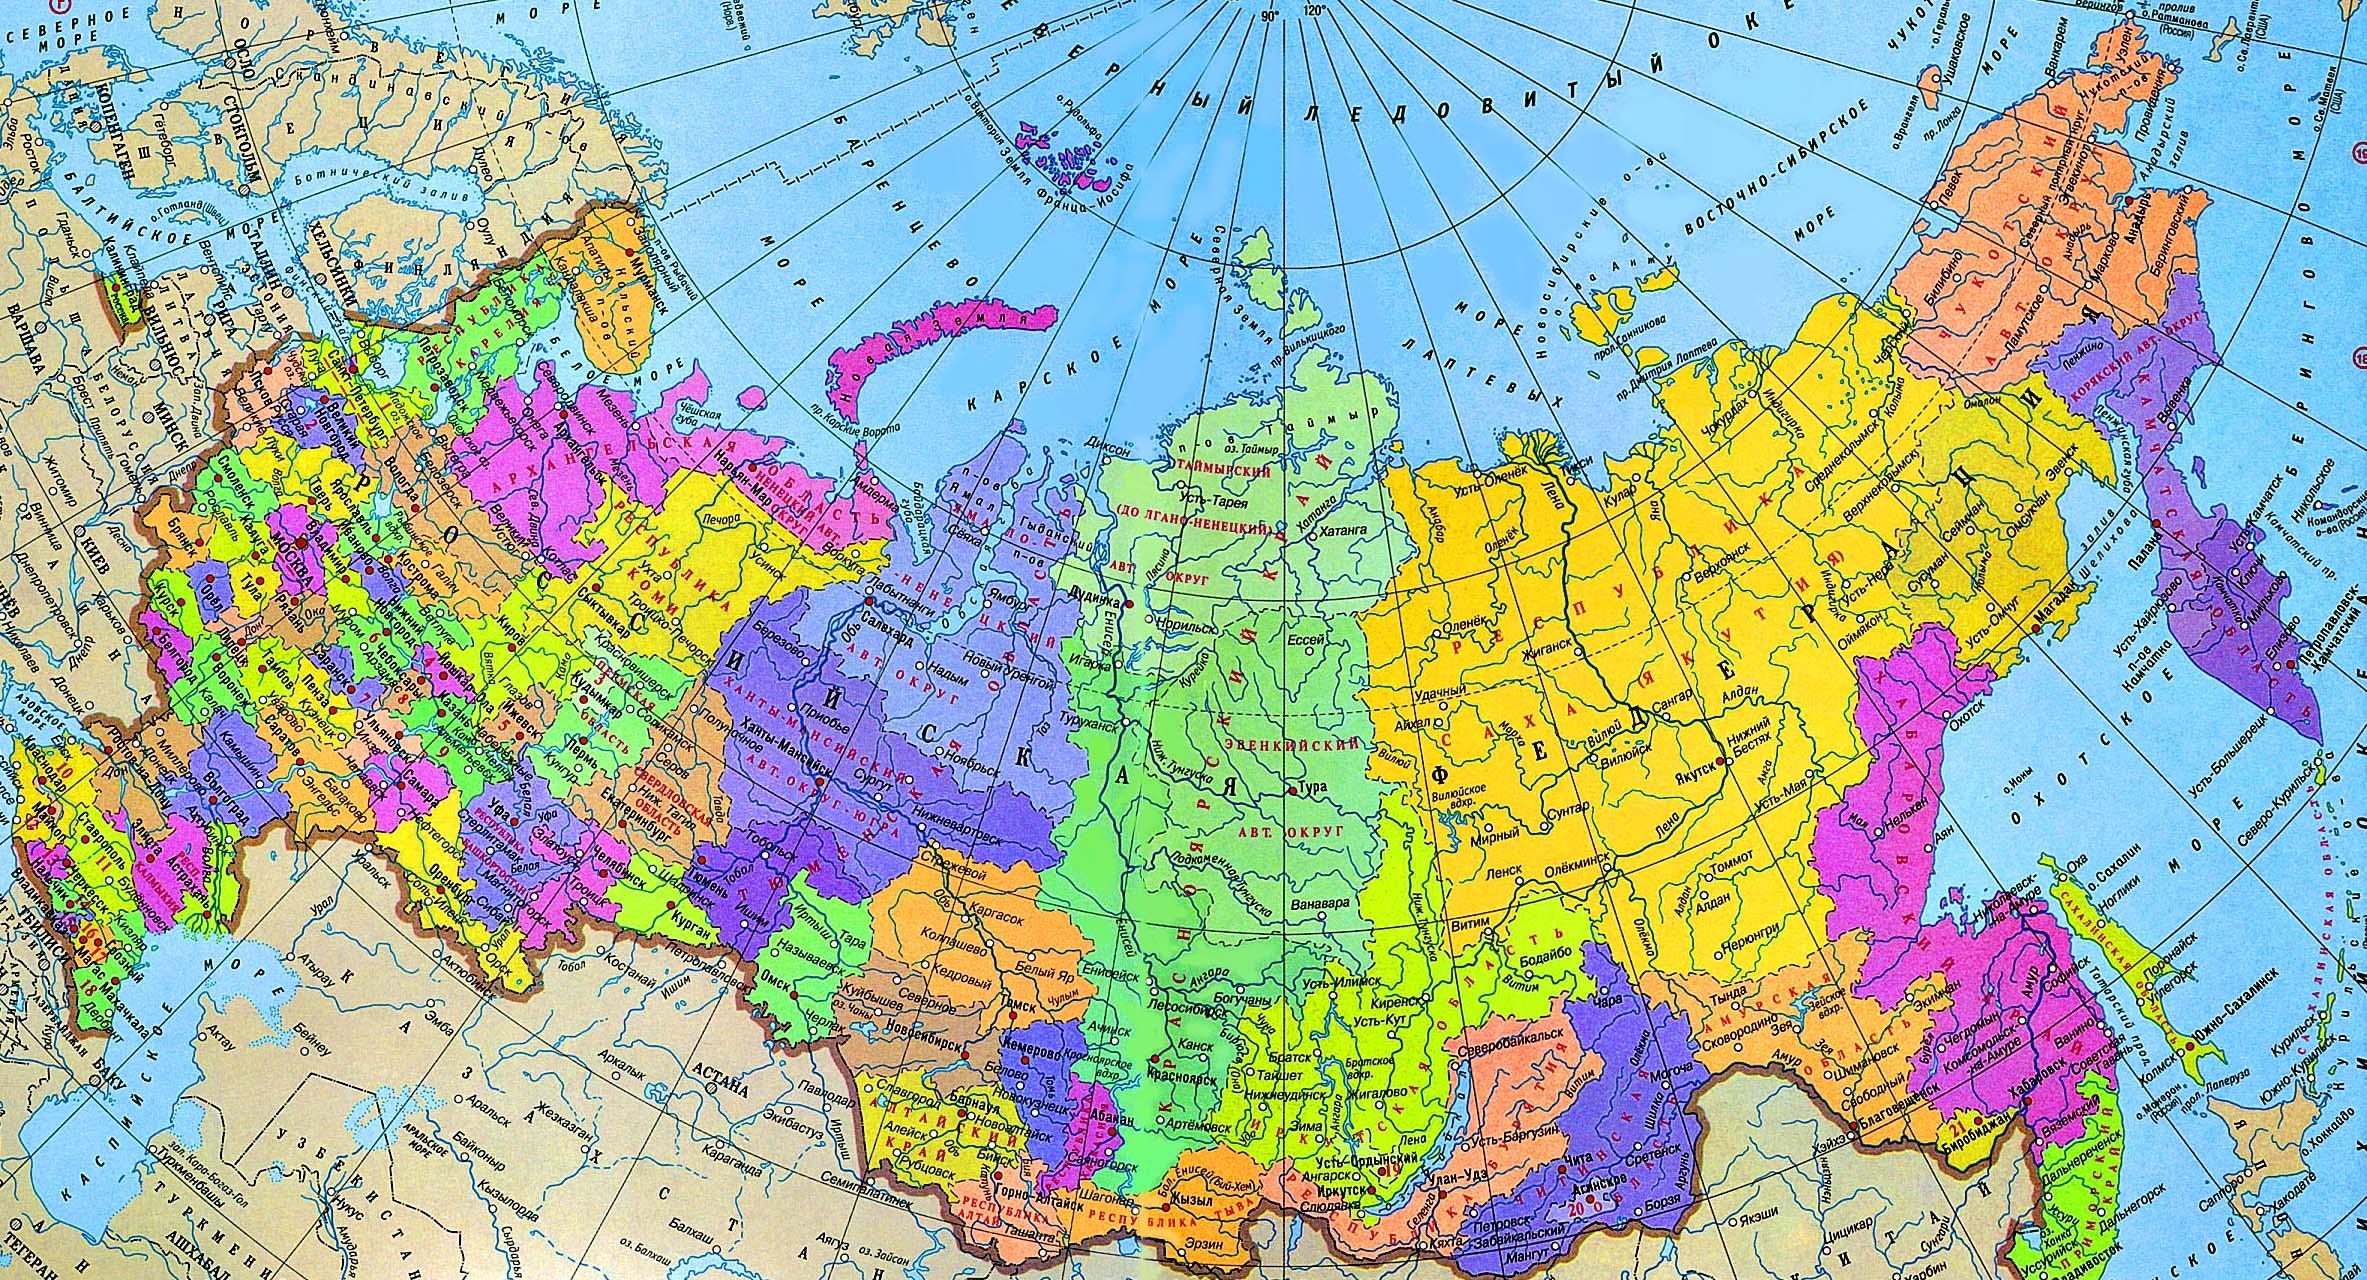 Российская Федерация имеет федеративное устройство республик, областей, краев, автономных образований